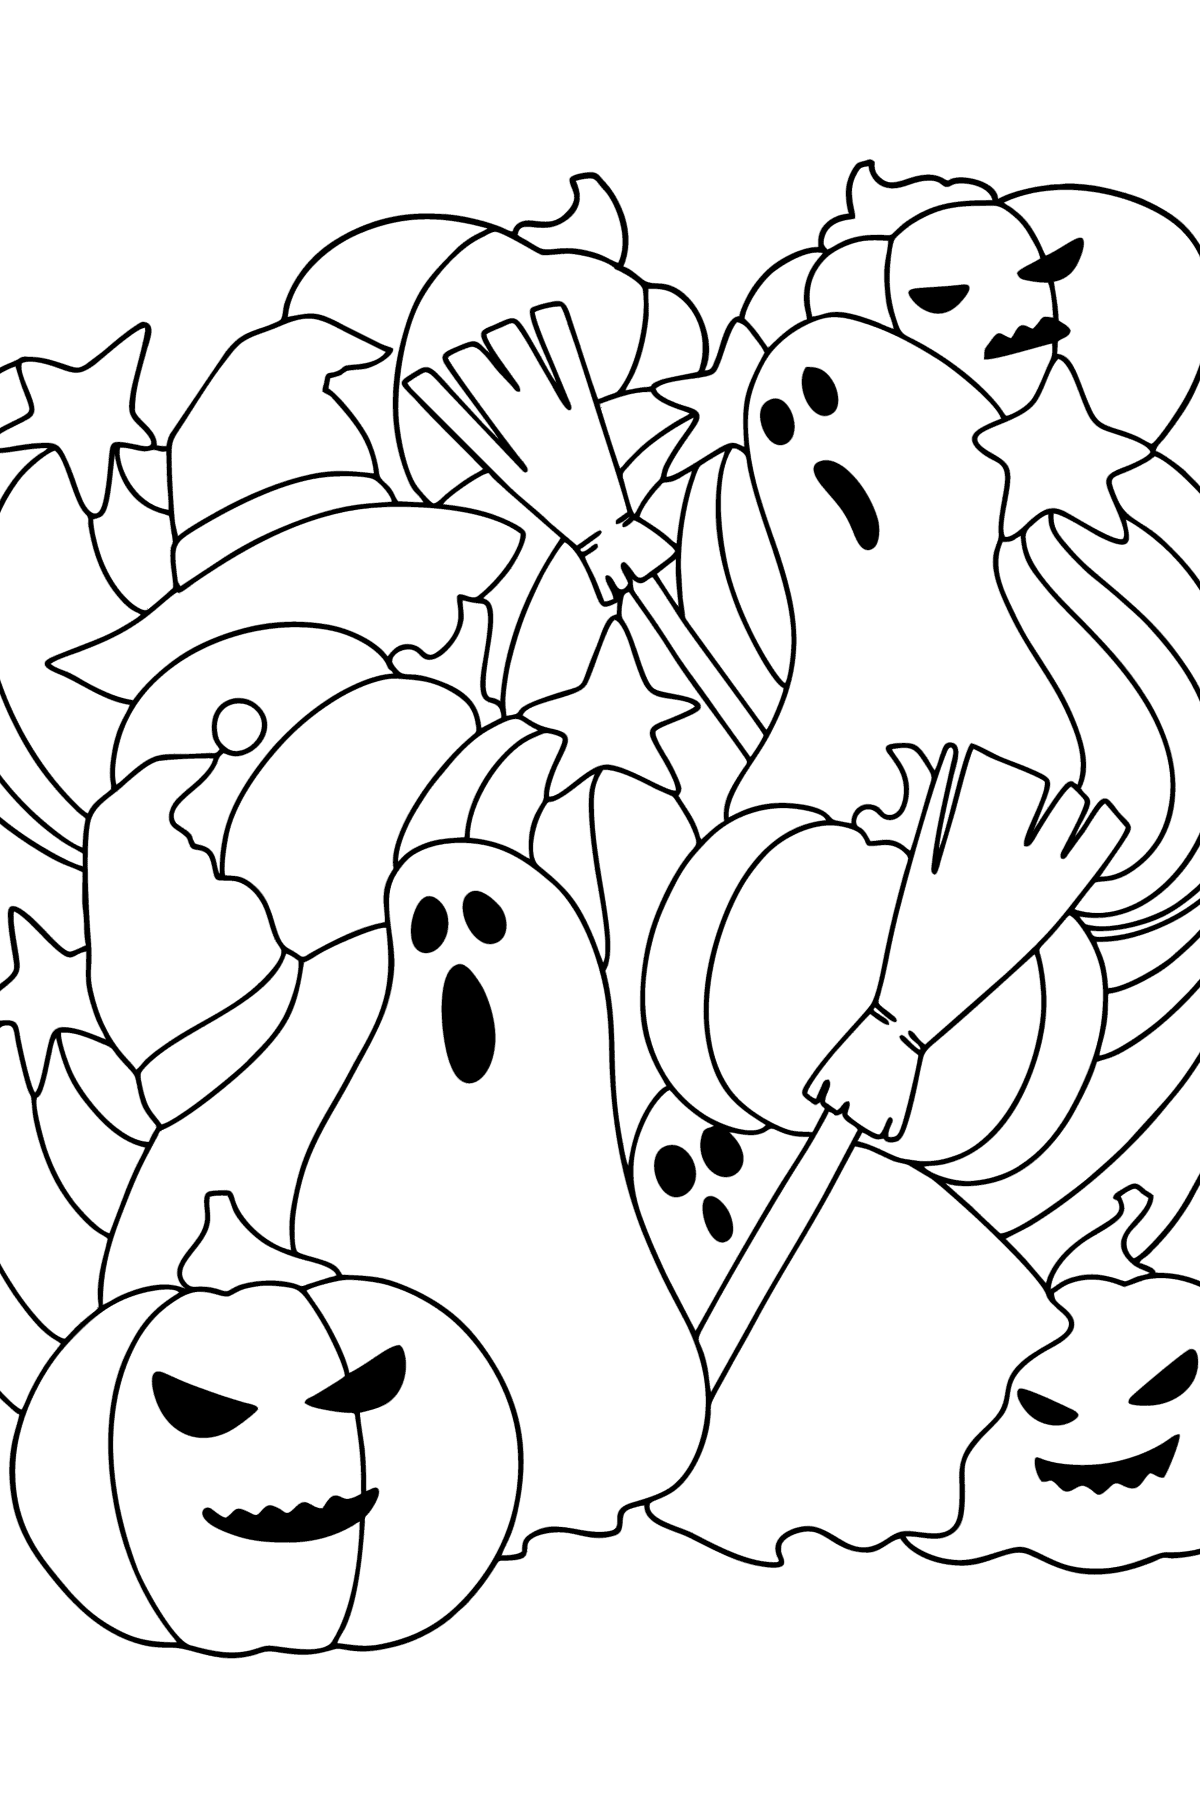 Tegning til fargelegging Doodle for barn - Halloween - Tegninger til fargelegging for barn